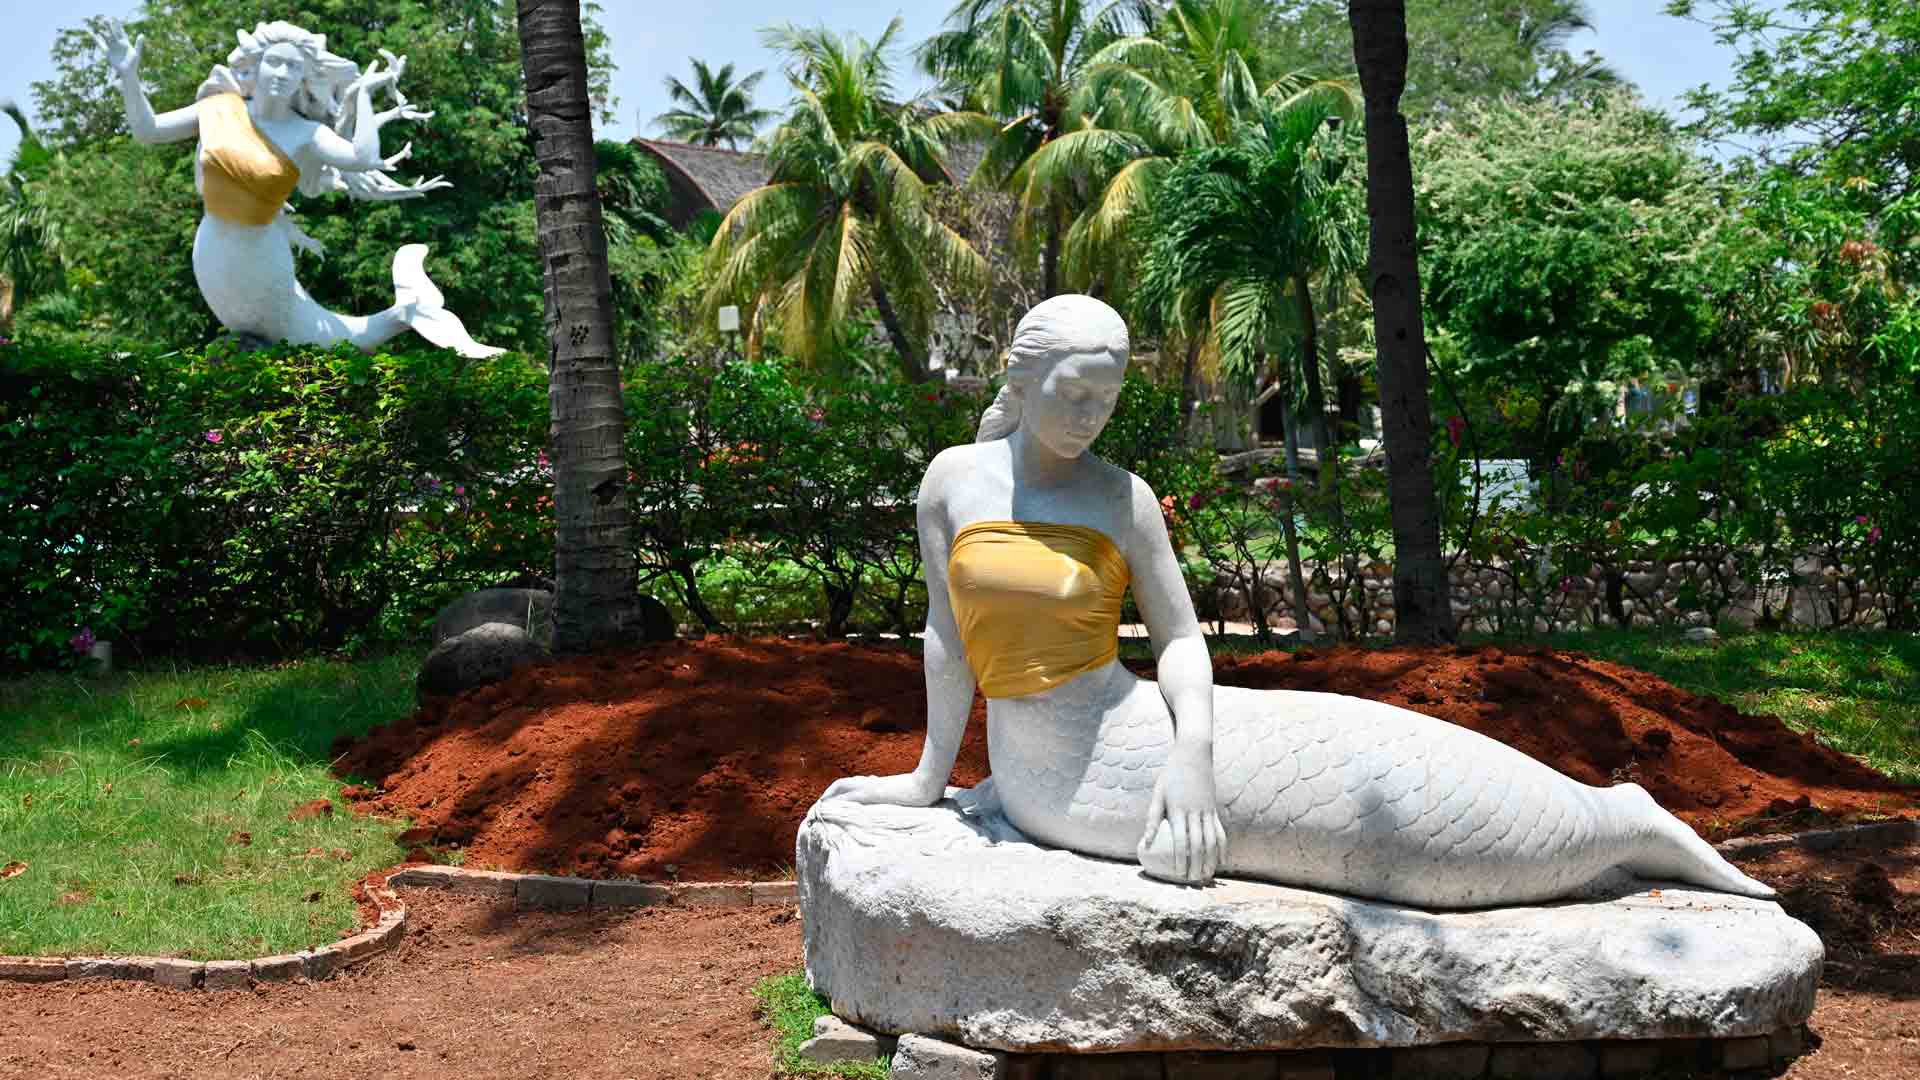 Censurados los pechos de dos estatuas de sirenas en un parque de atracciones de Indonesia